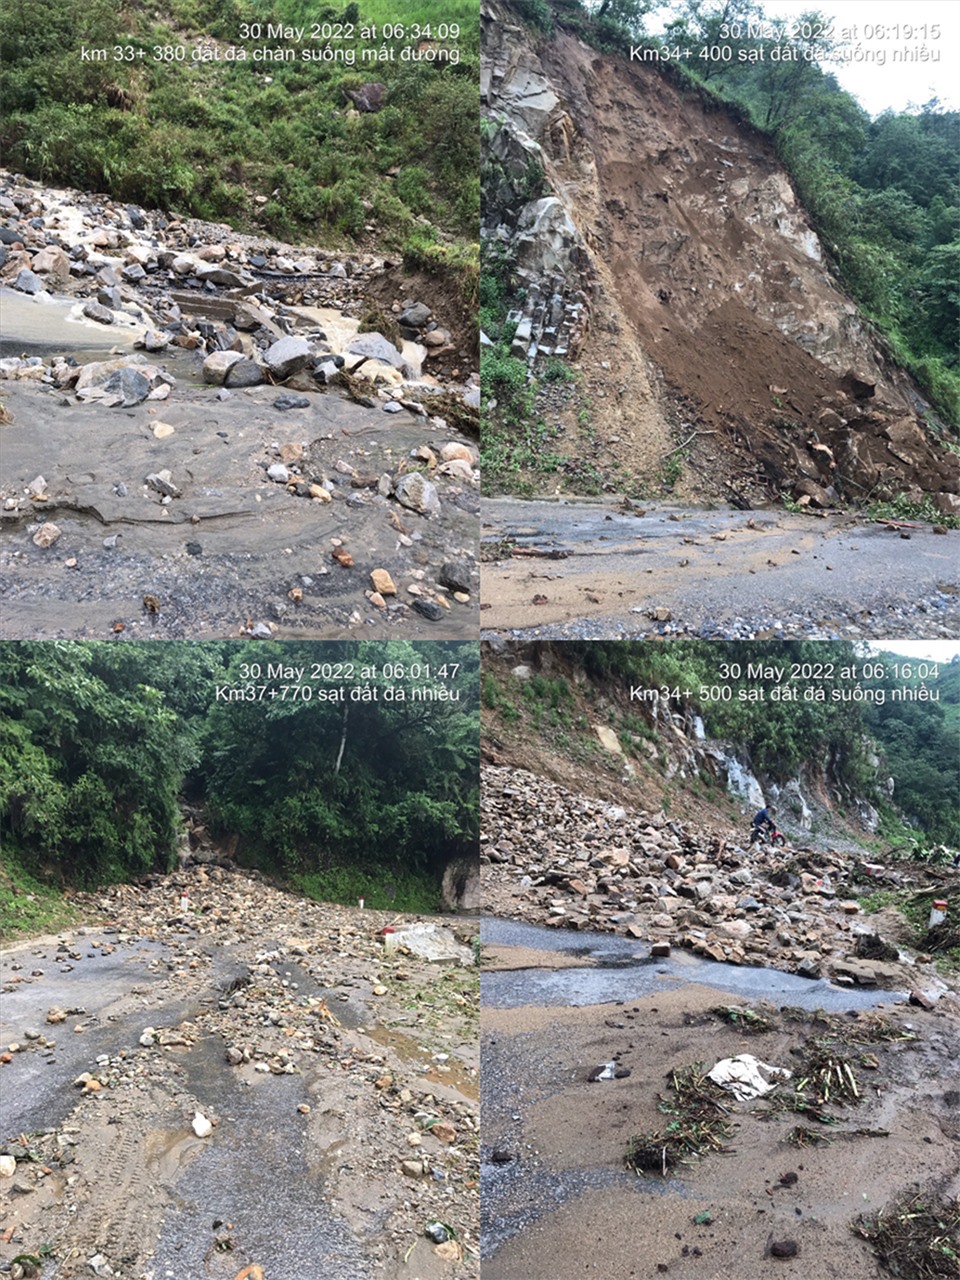 Hình ảnh sạt lở đất đá được ghi nhận tại Km33+380, Km33+900, Km34+400 và Km34+500, tỉnh lộ 132, Lai Châu.